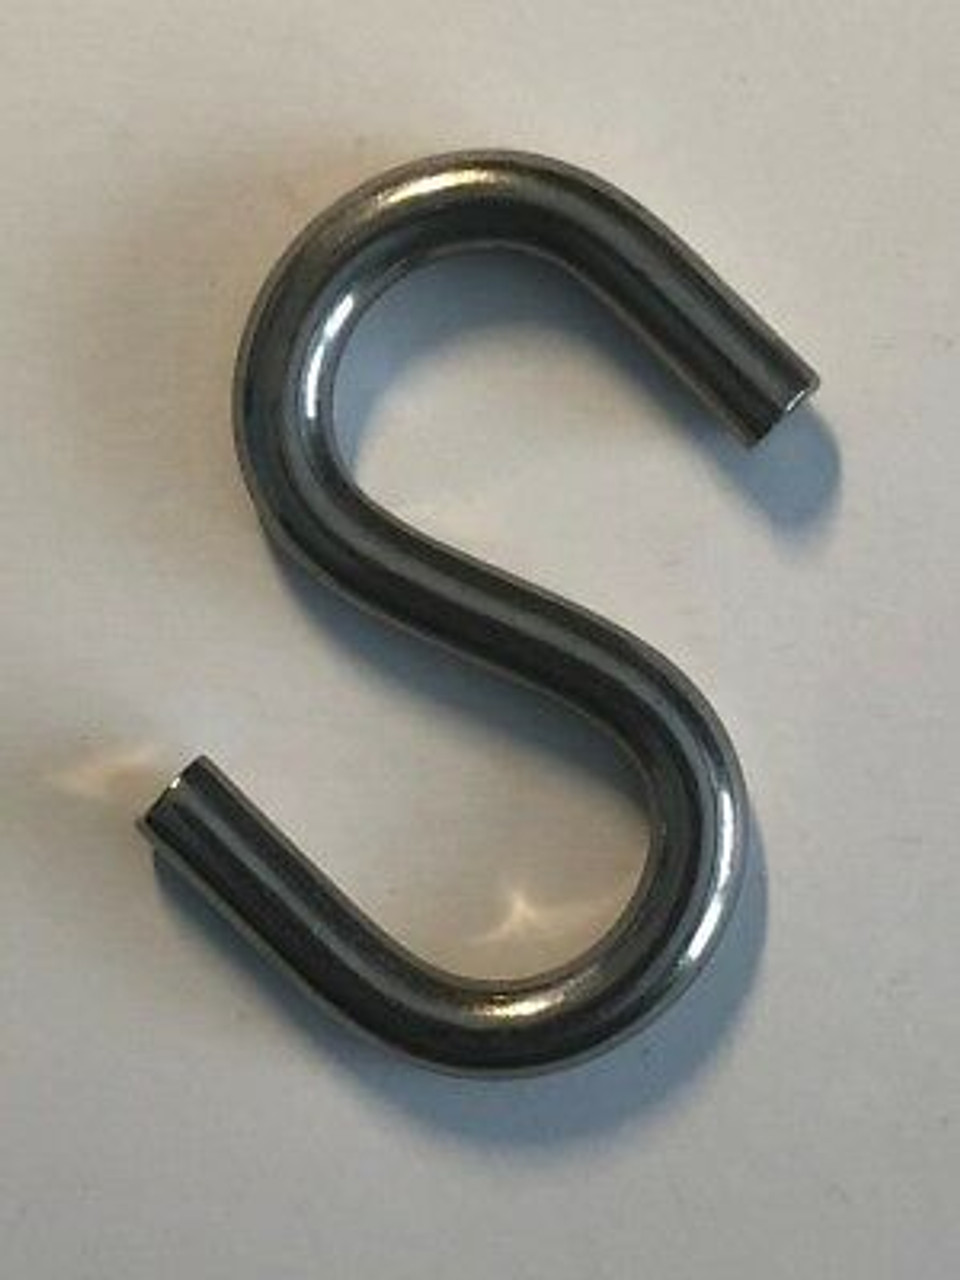 Stainless Steel 316 Eye Grab Hook 5/16 x 3 1/4 Marine Grade - US